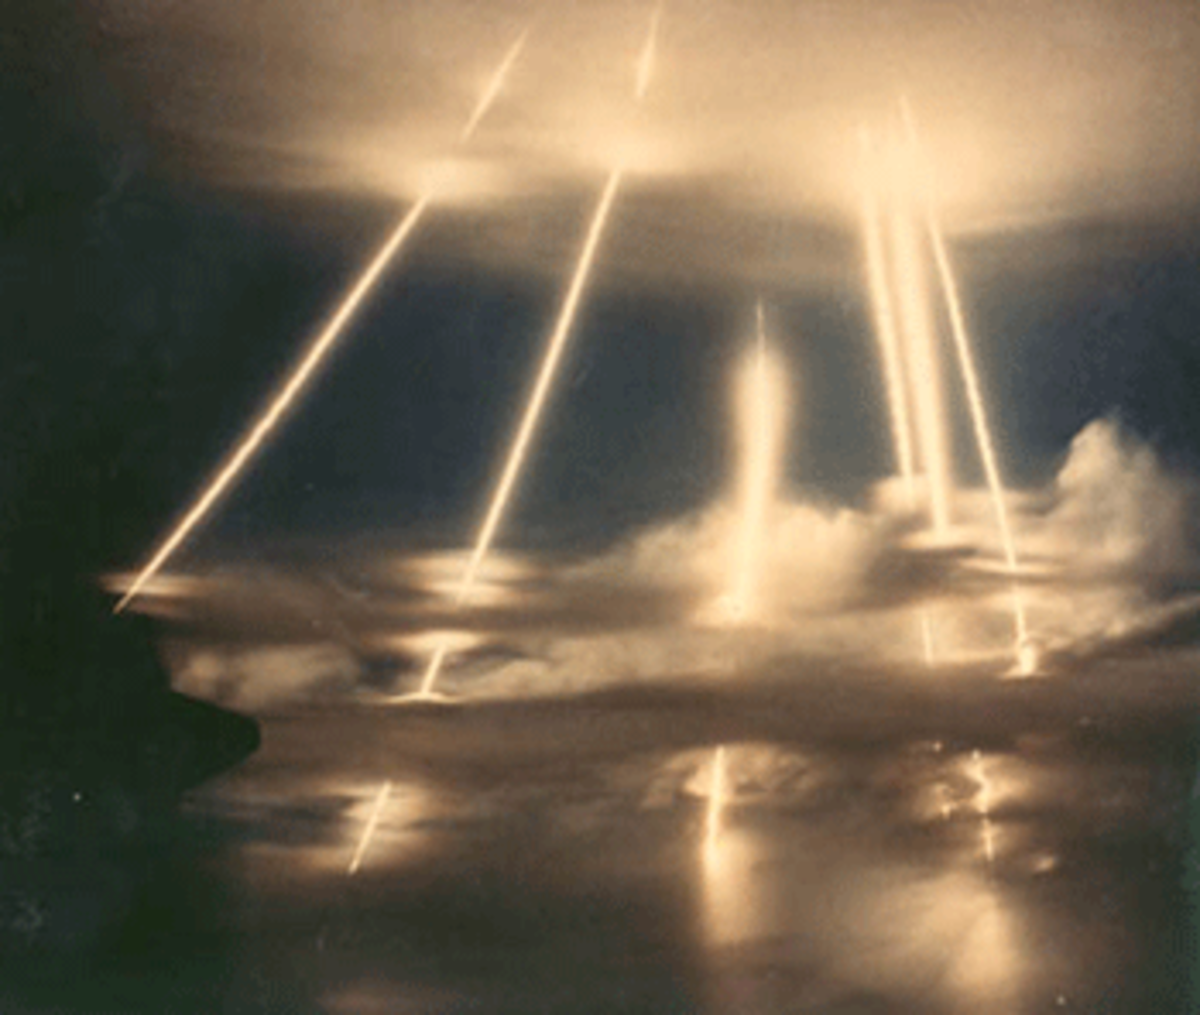 star wars missile defense program